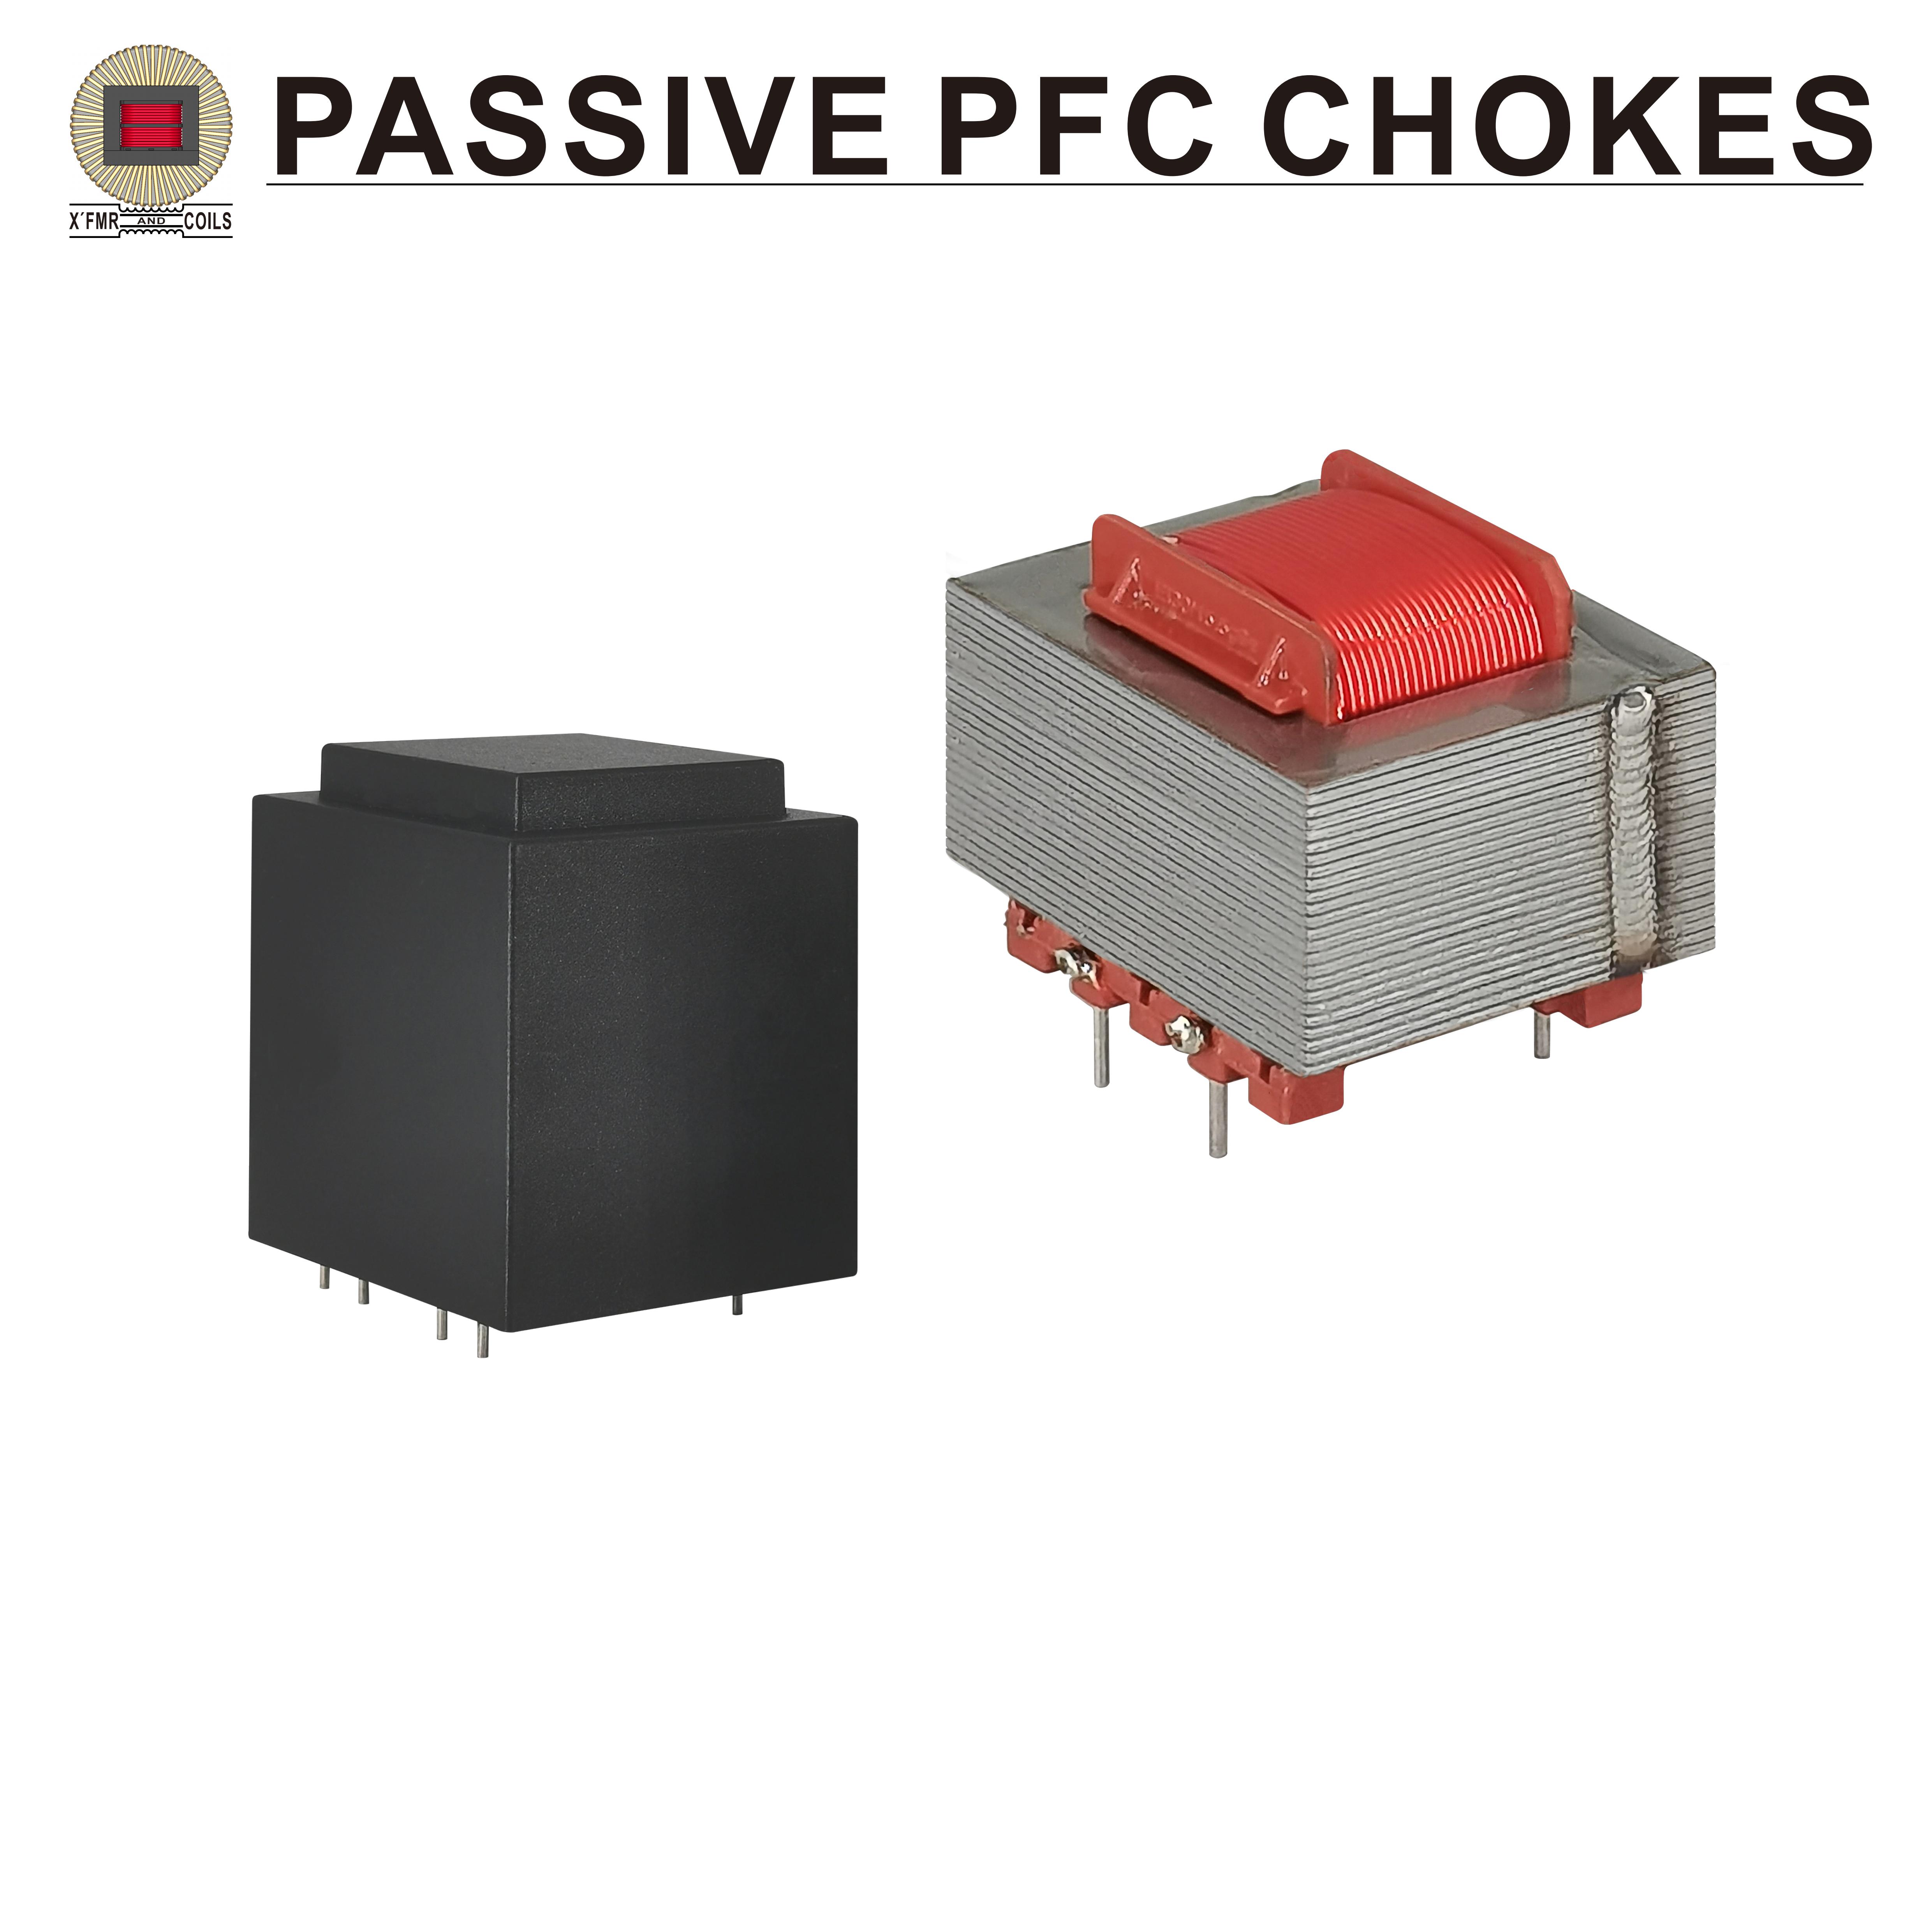 Passive PFC Chokes PPFC-01 Series